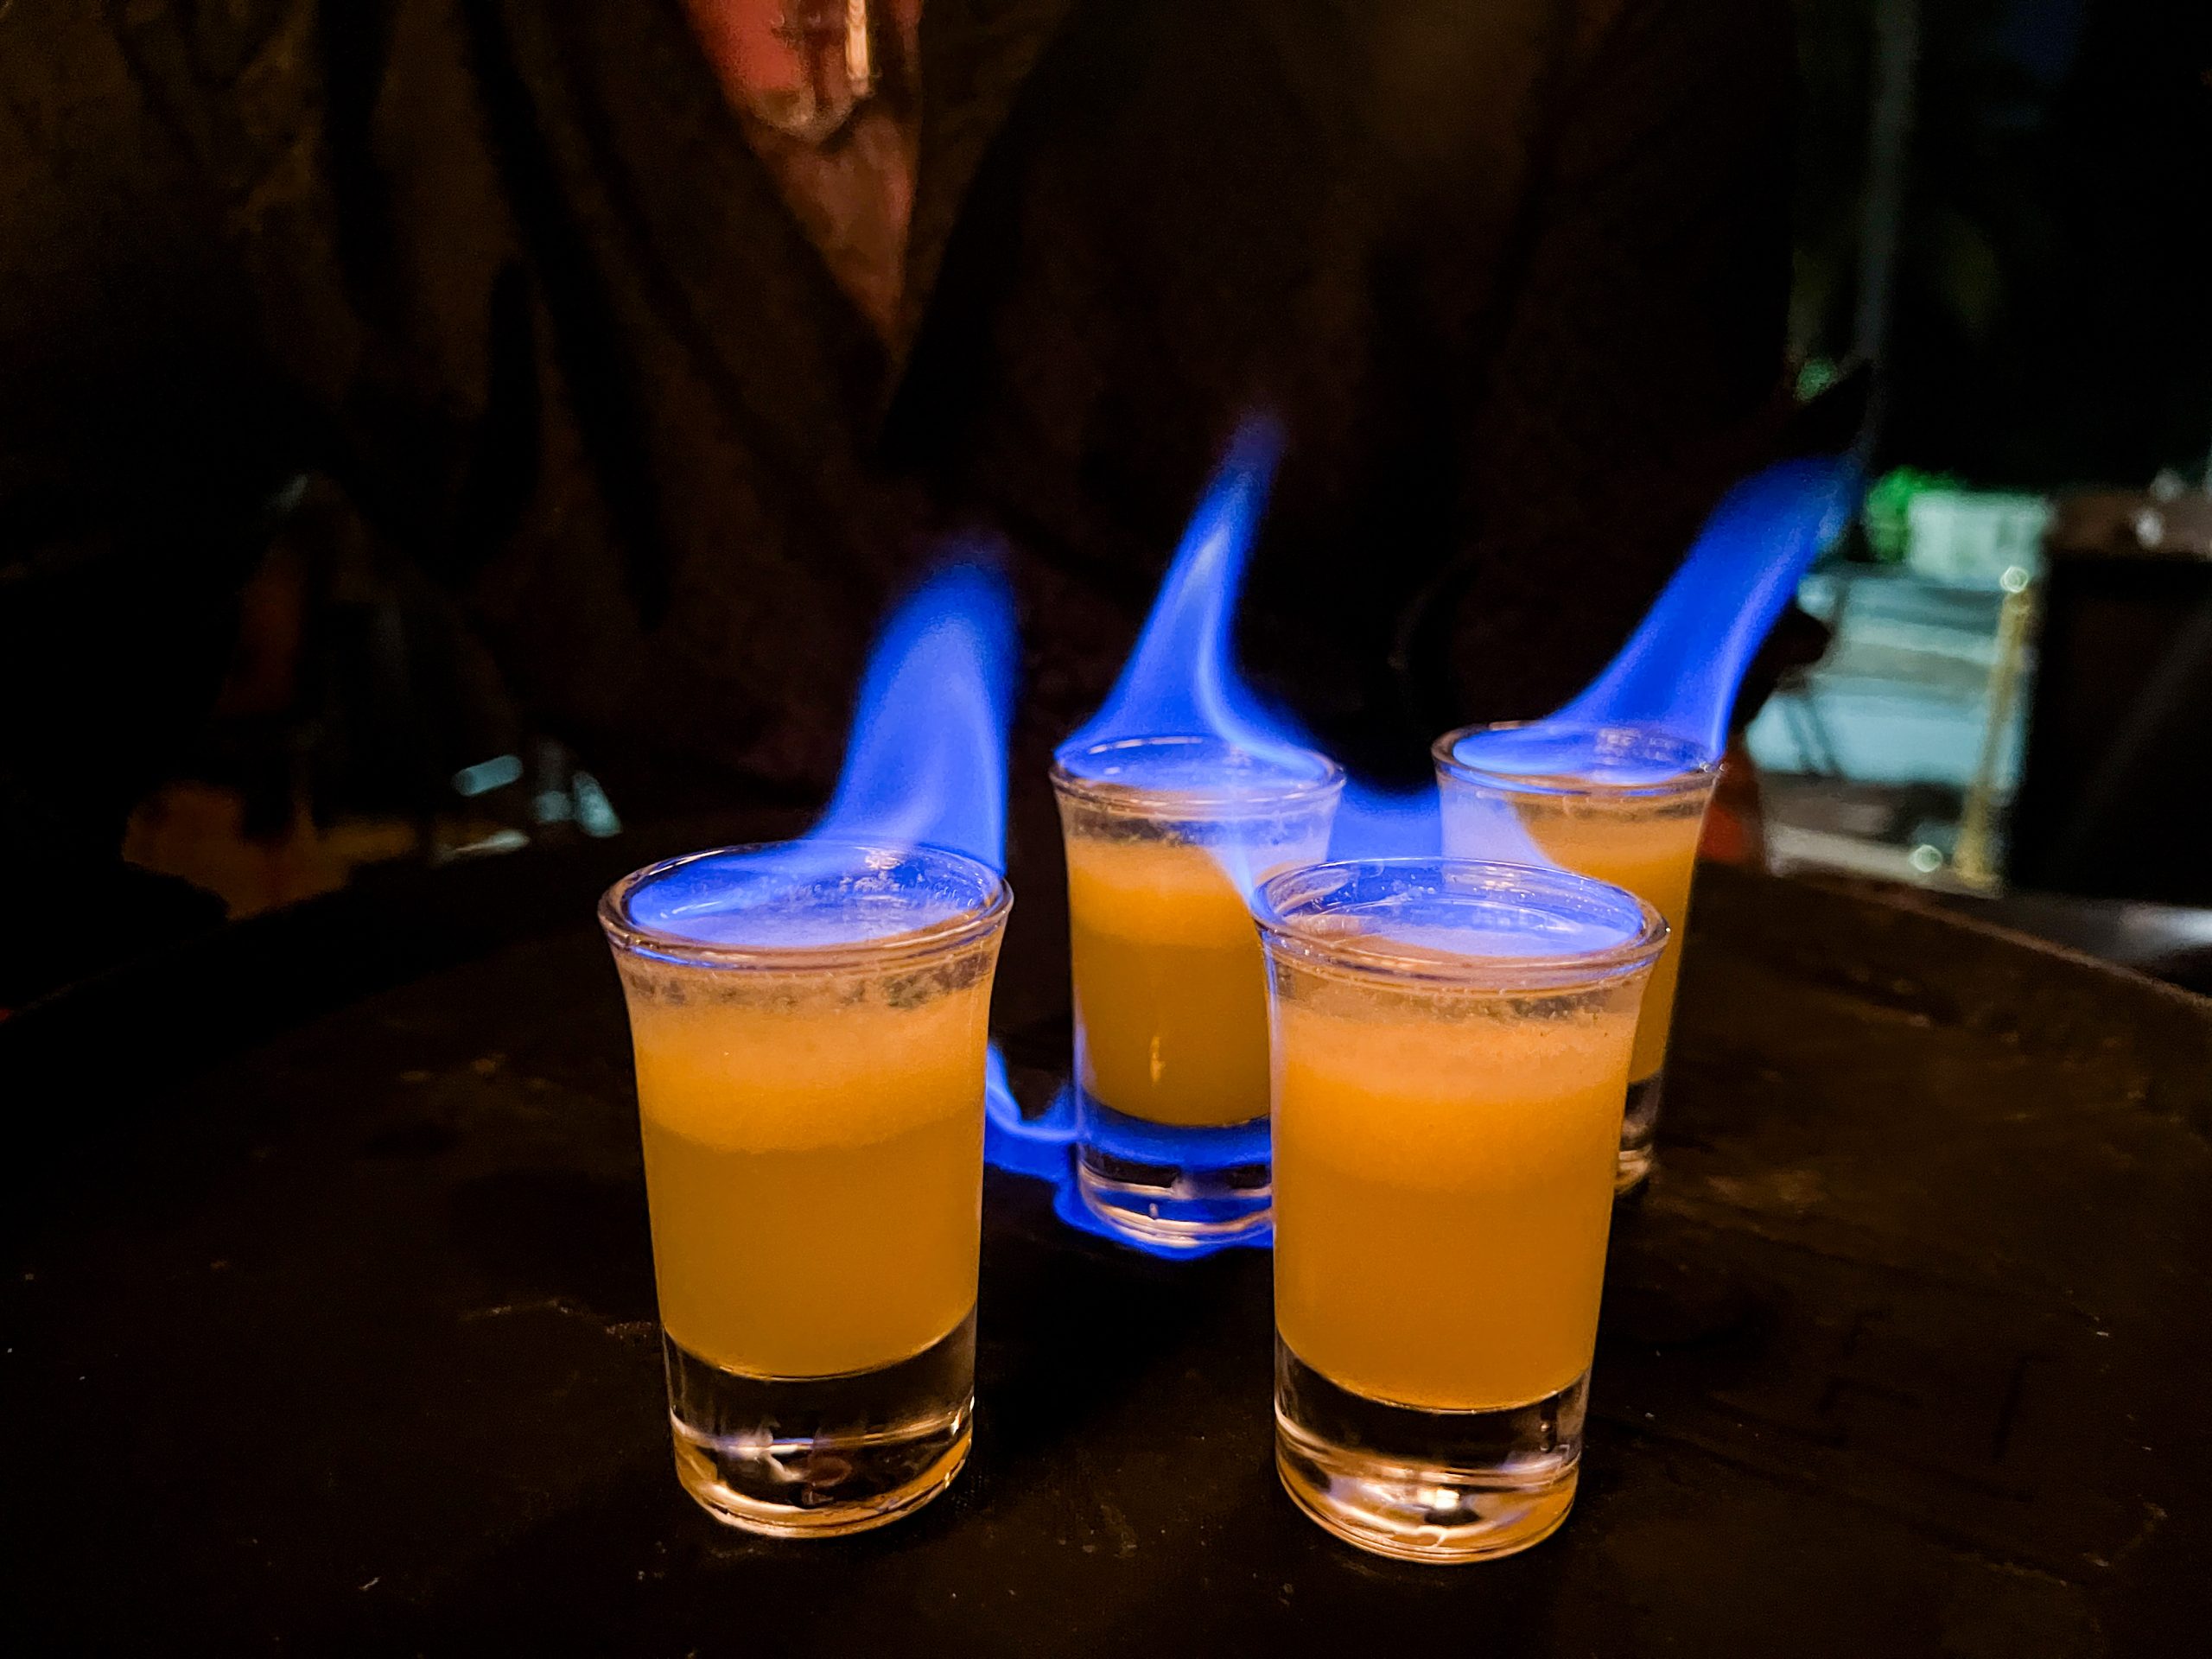 The Flaming Mojito shots